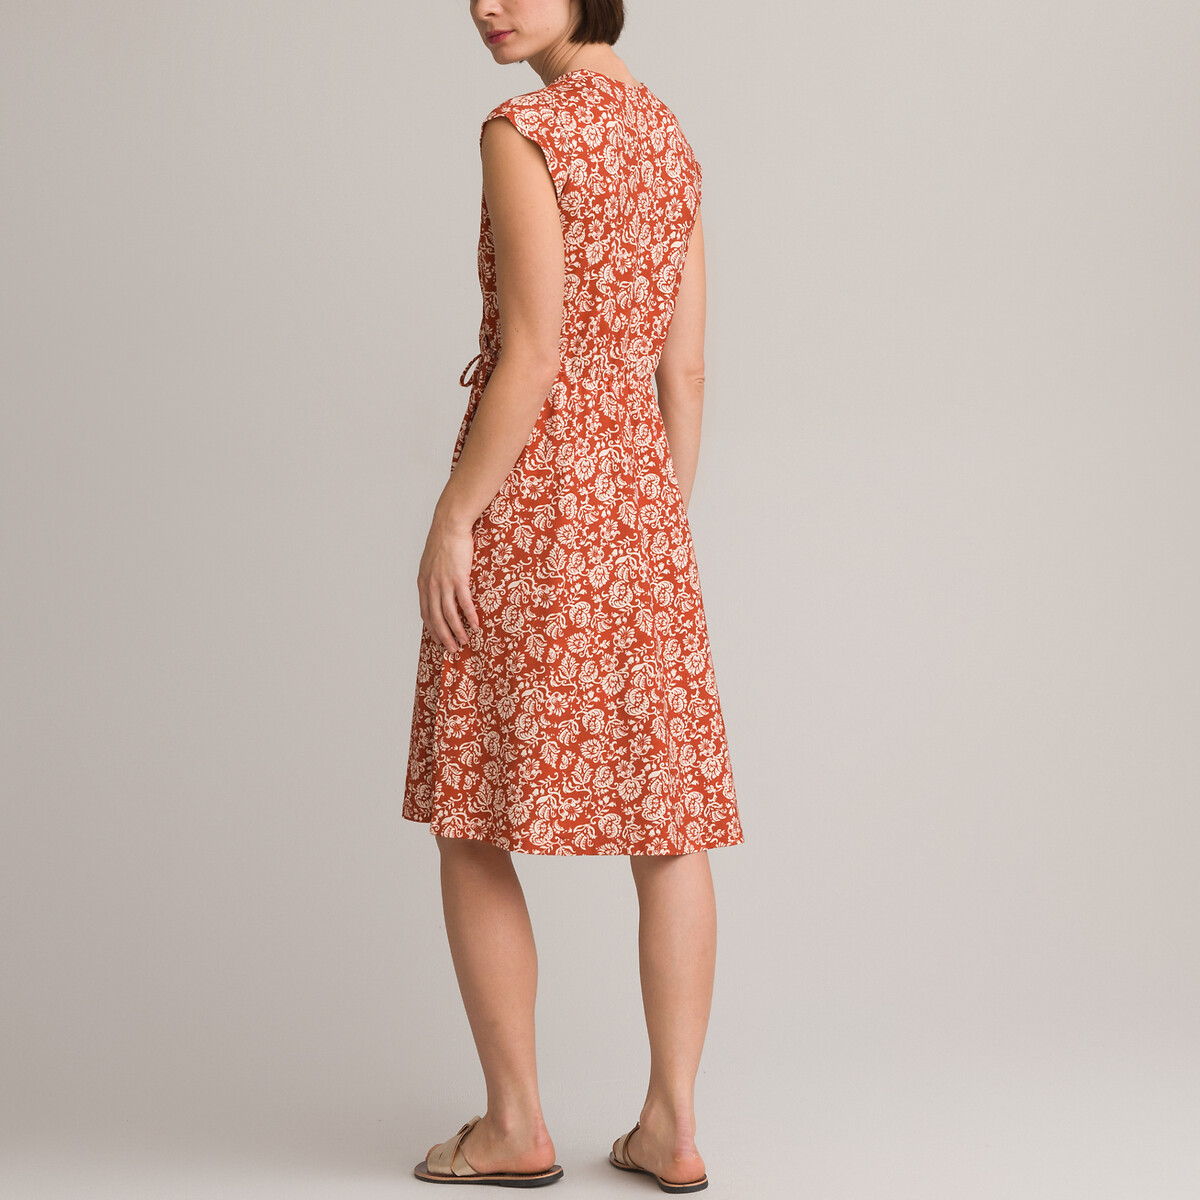 Платье-миди Расклешенное с цветочным принтом 56 красный LaRedoute, размер 56 - фото 4